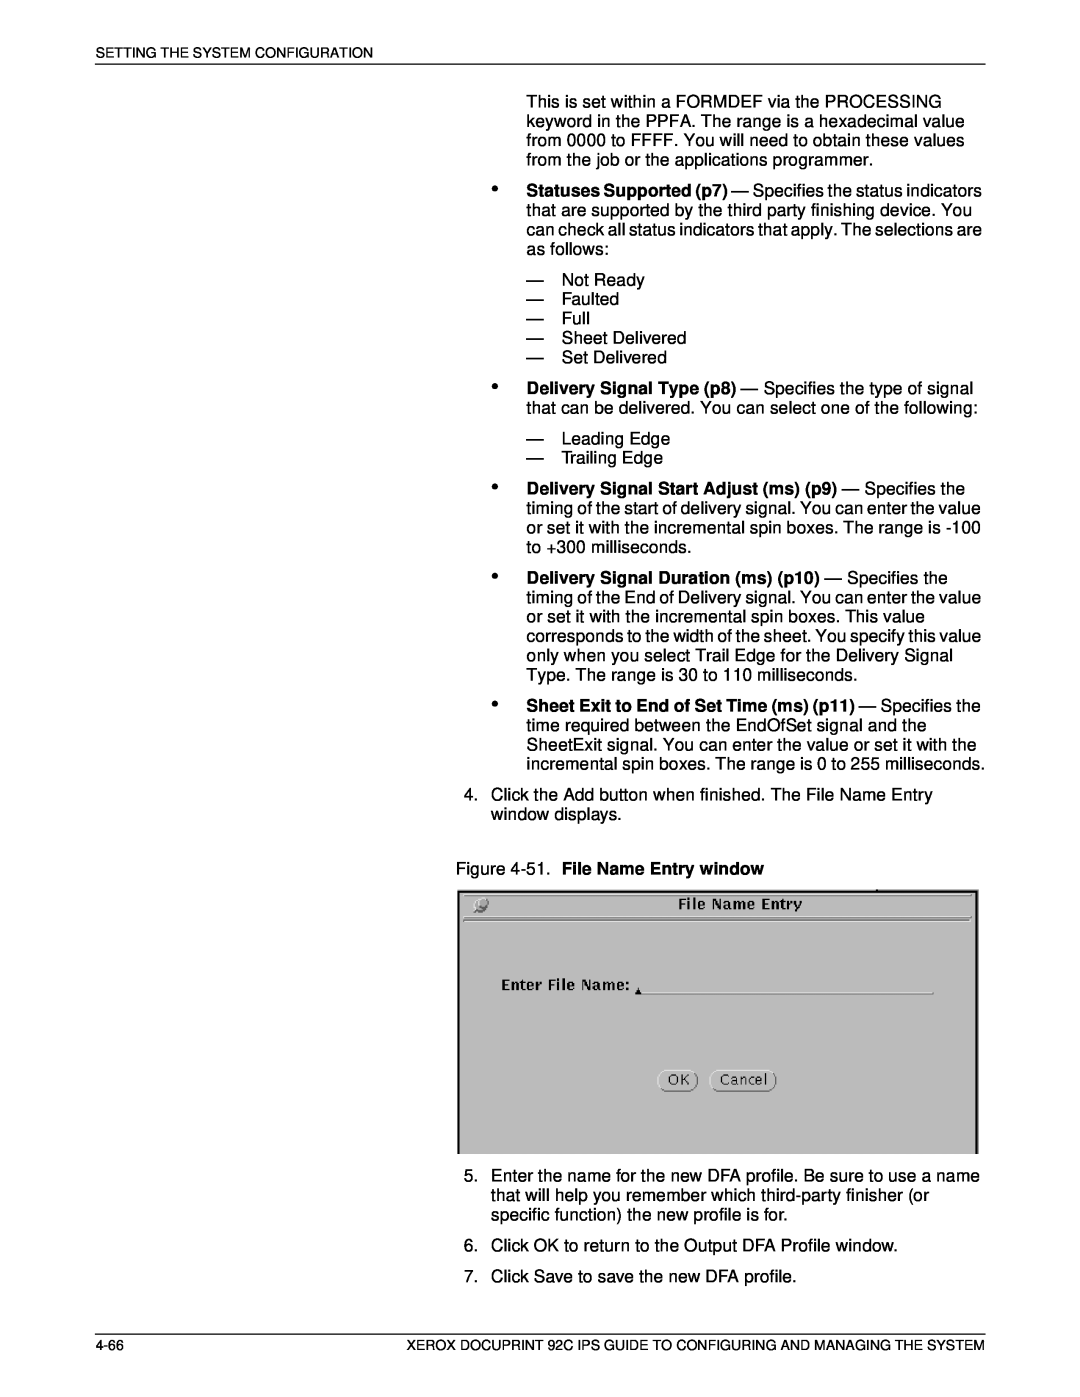 Xerox 92C IPS manual 51. File Name Entry window 